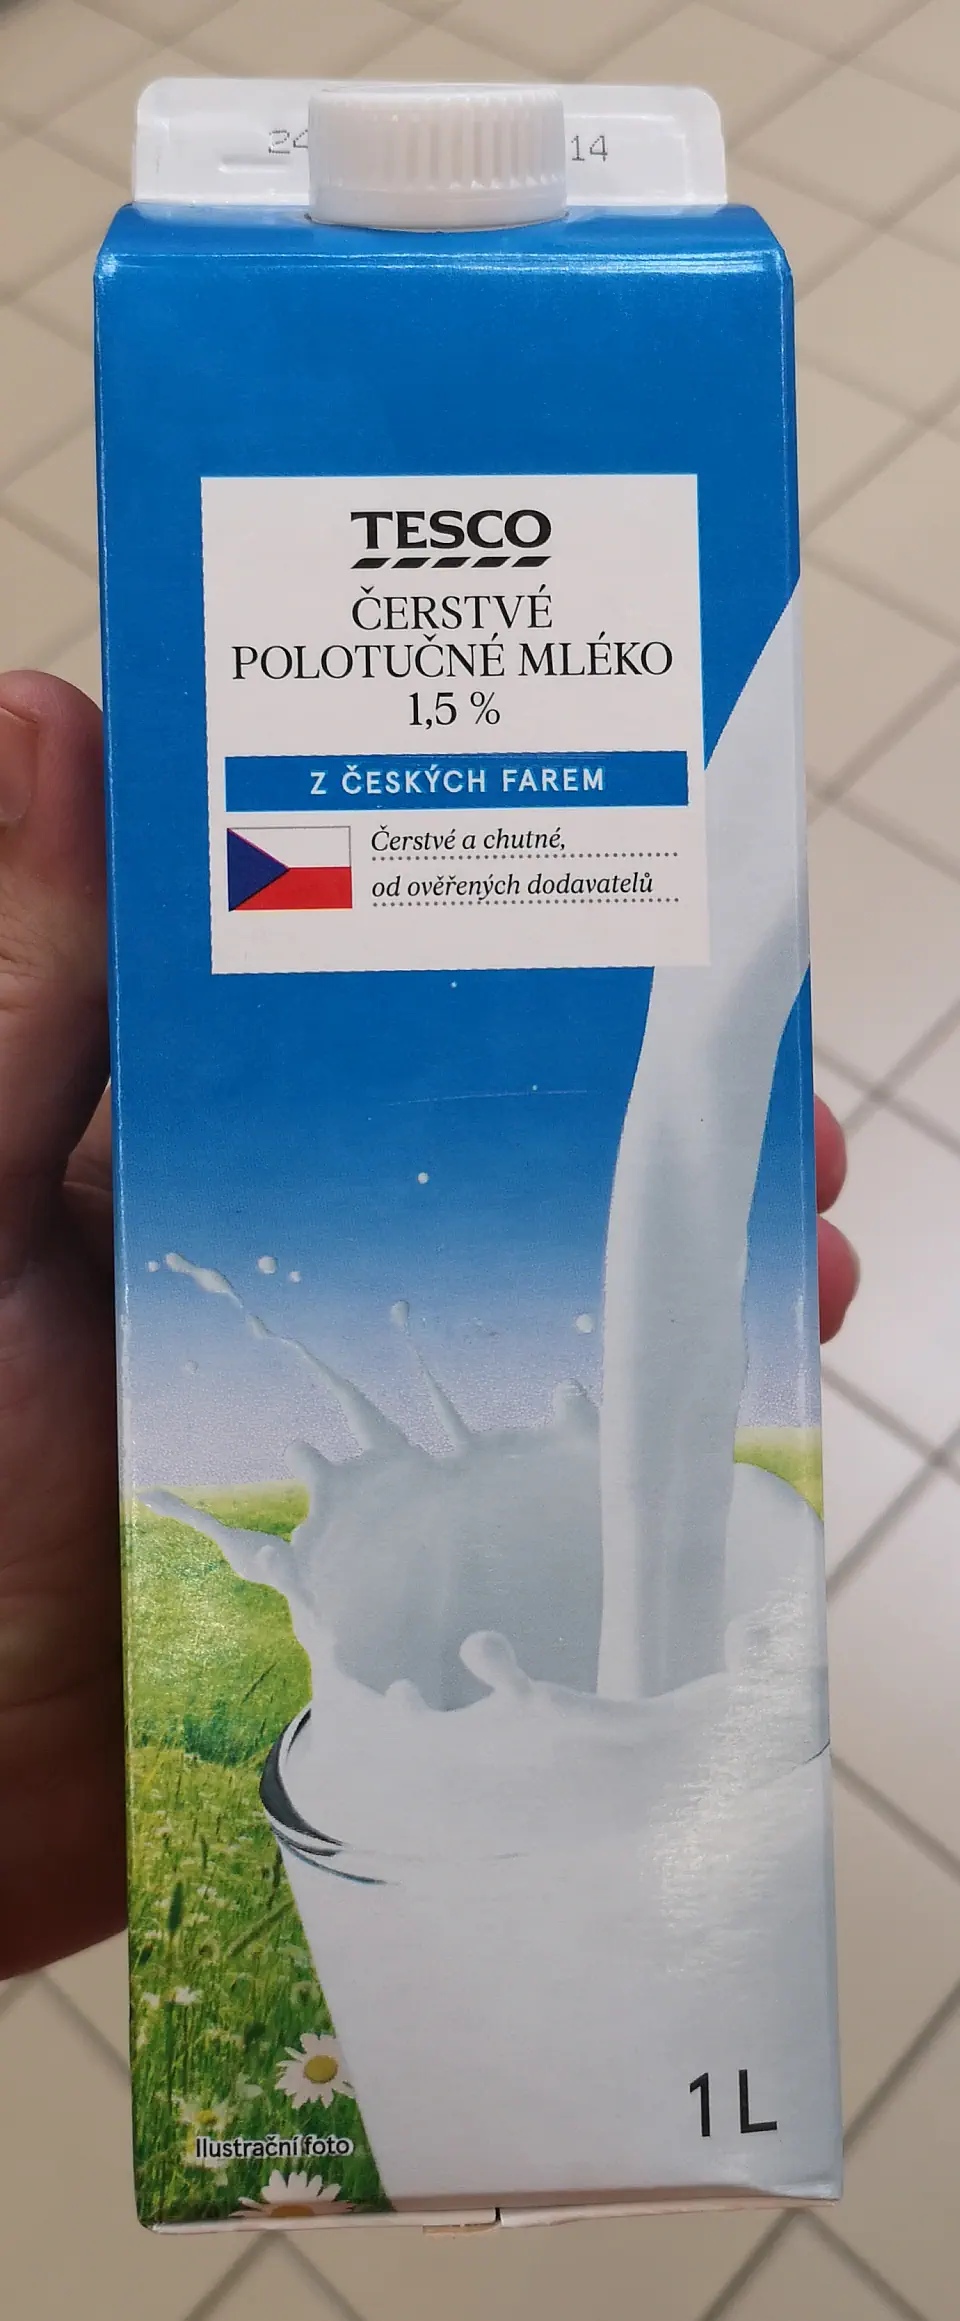 Tesco čerstvé mléko polotučné